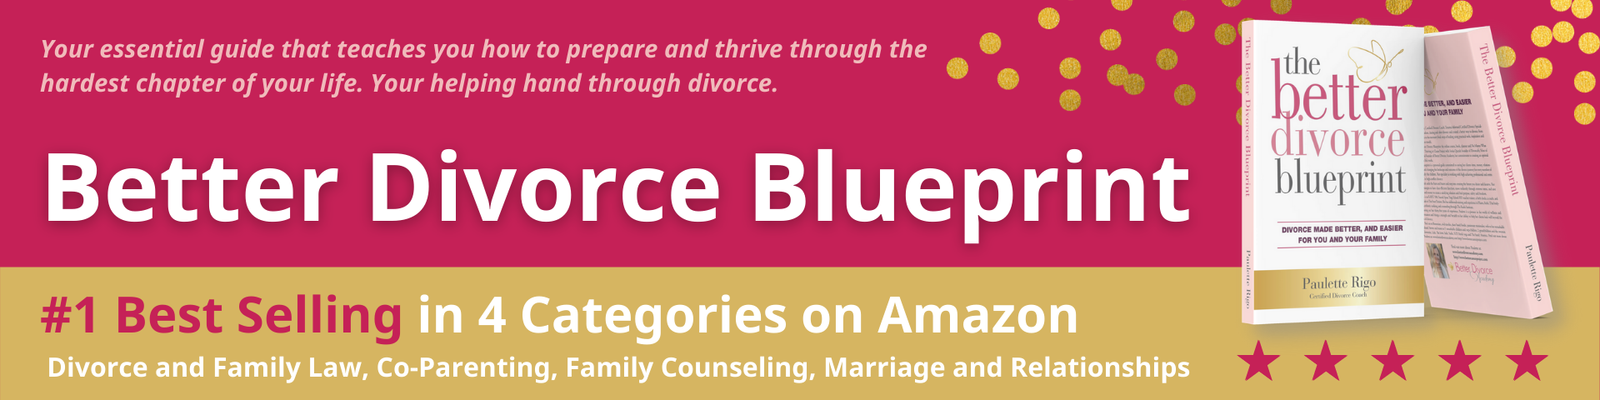 the Better divorce blueprint book